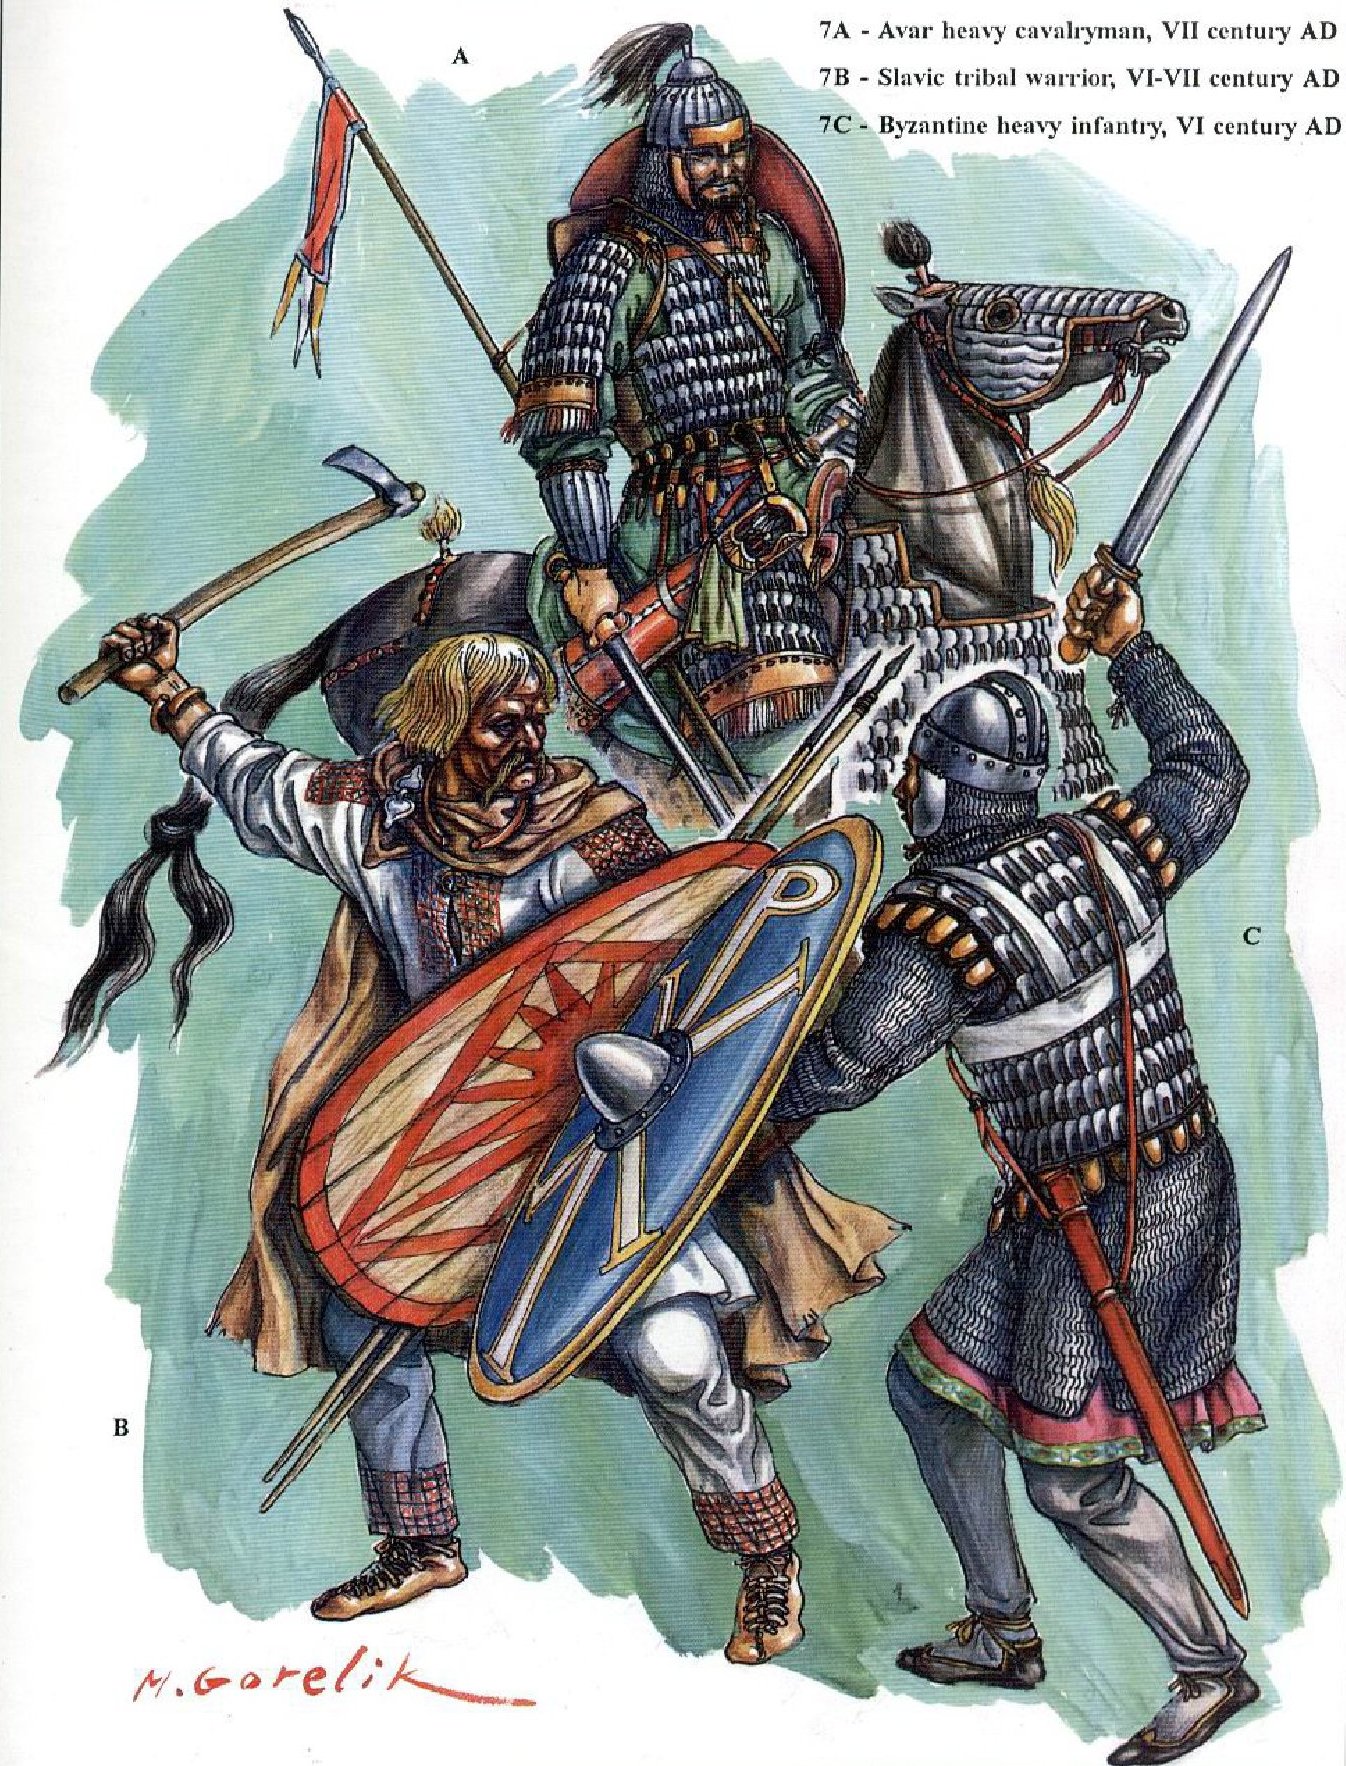 Аварский всадник и славянский пехотинец против византийского воина. Реконструкция М. Горелика